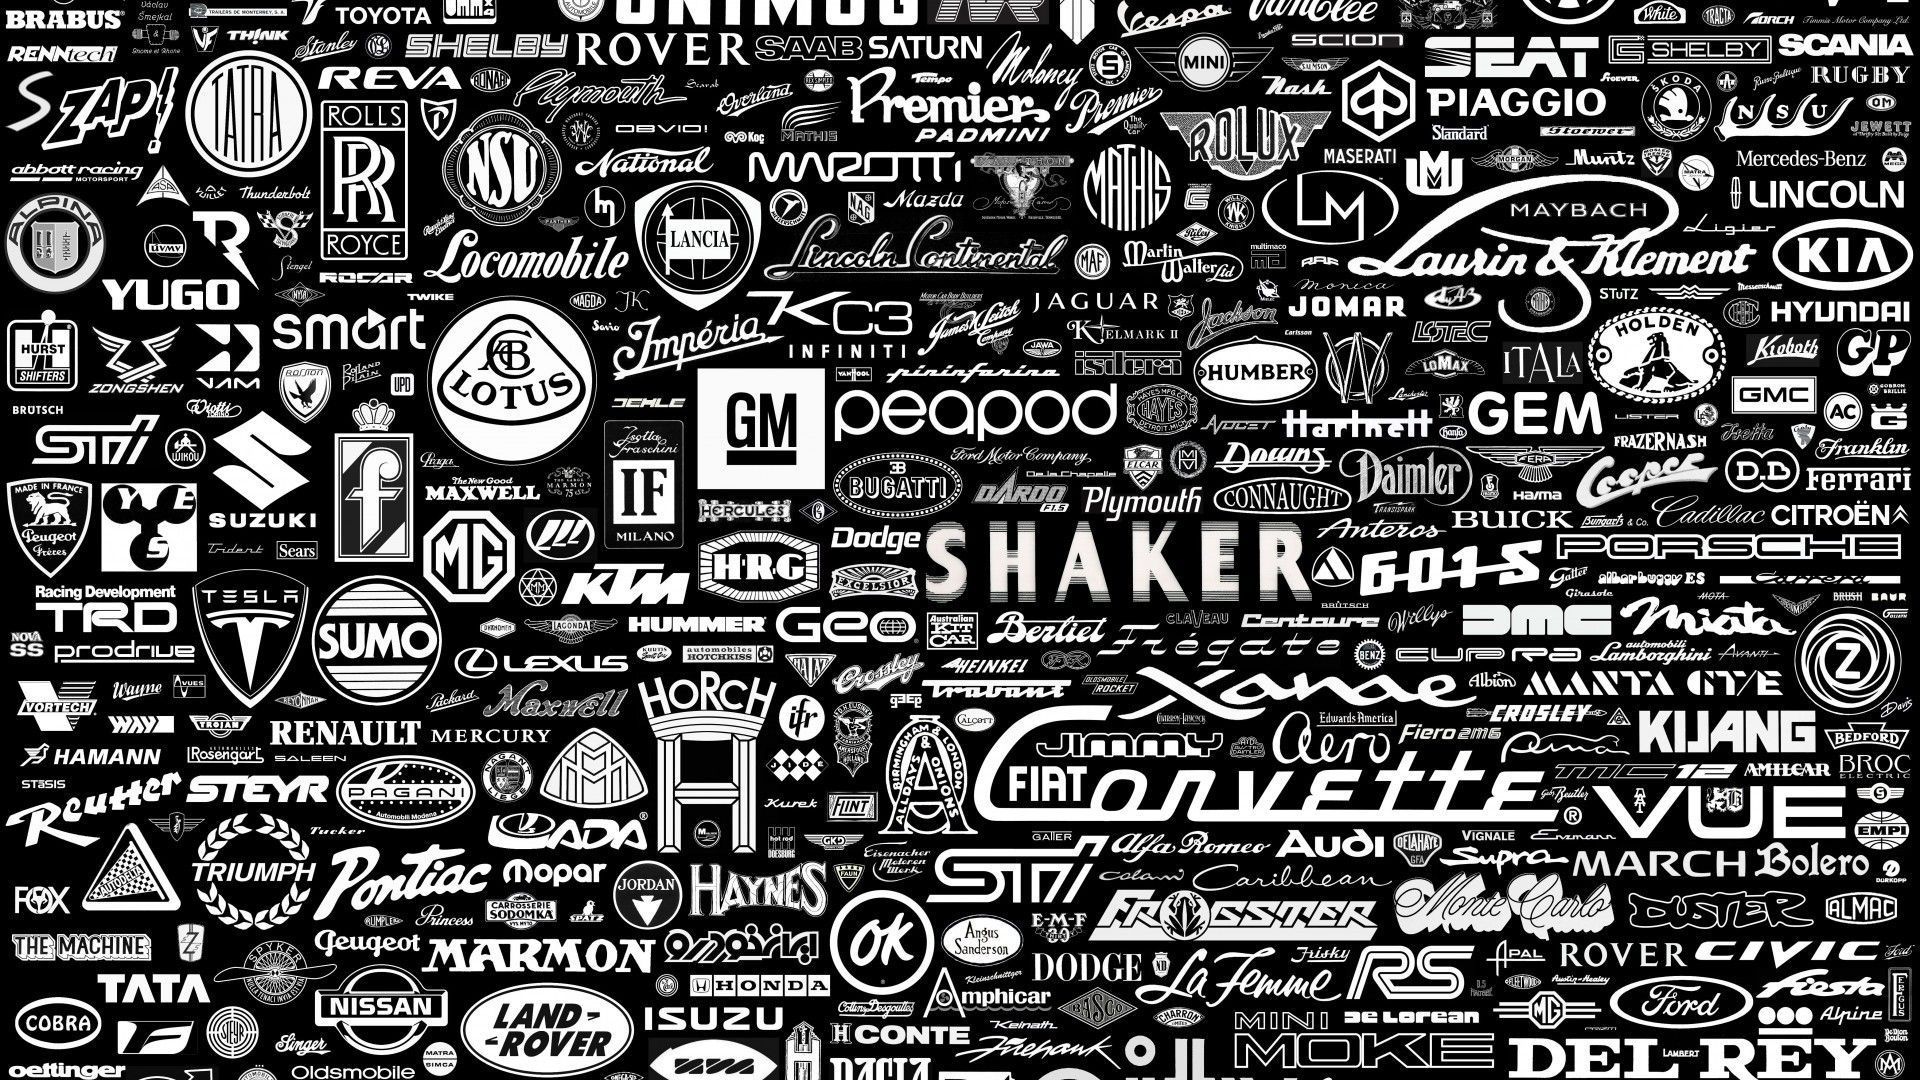 Wallpaper brands 2015 - Grasscloth Wallpaper